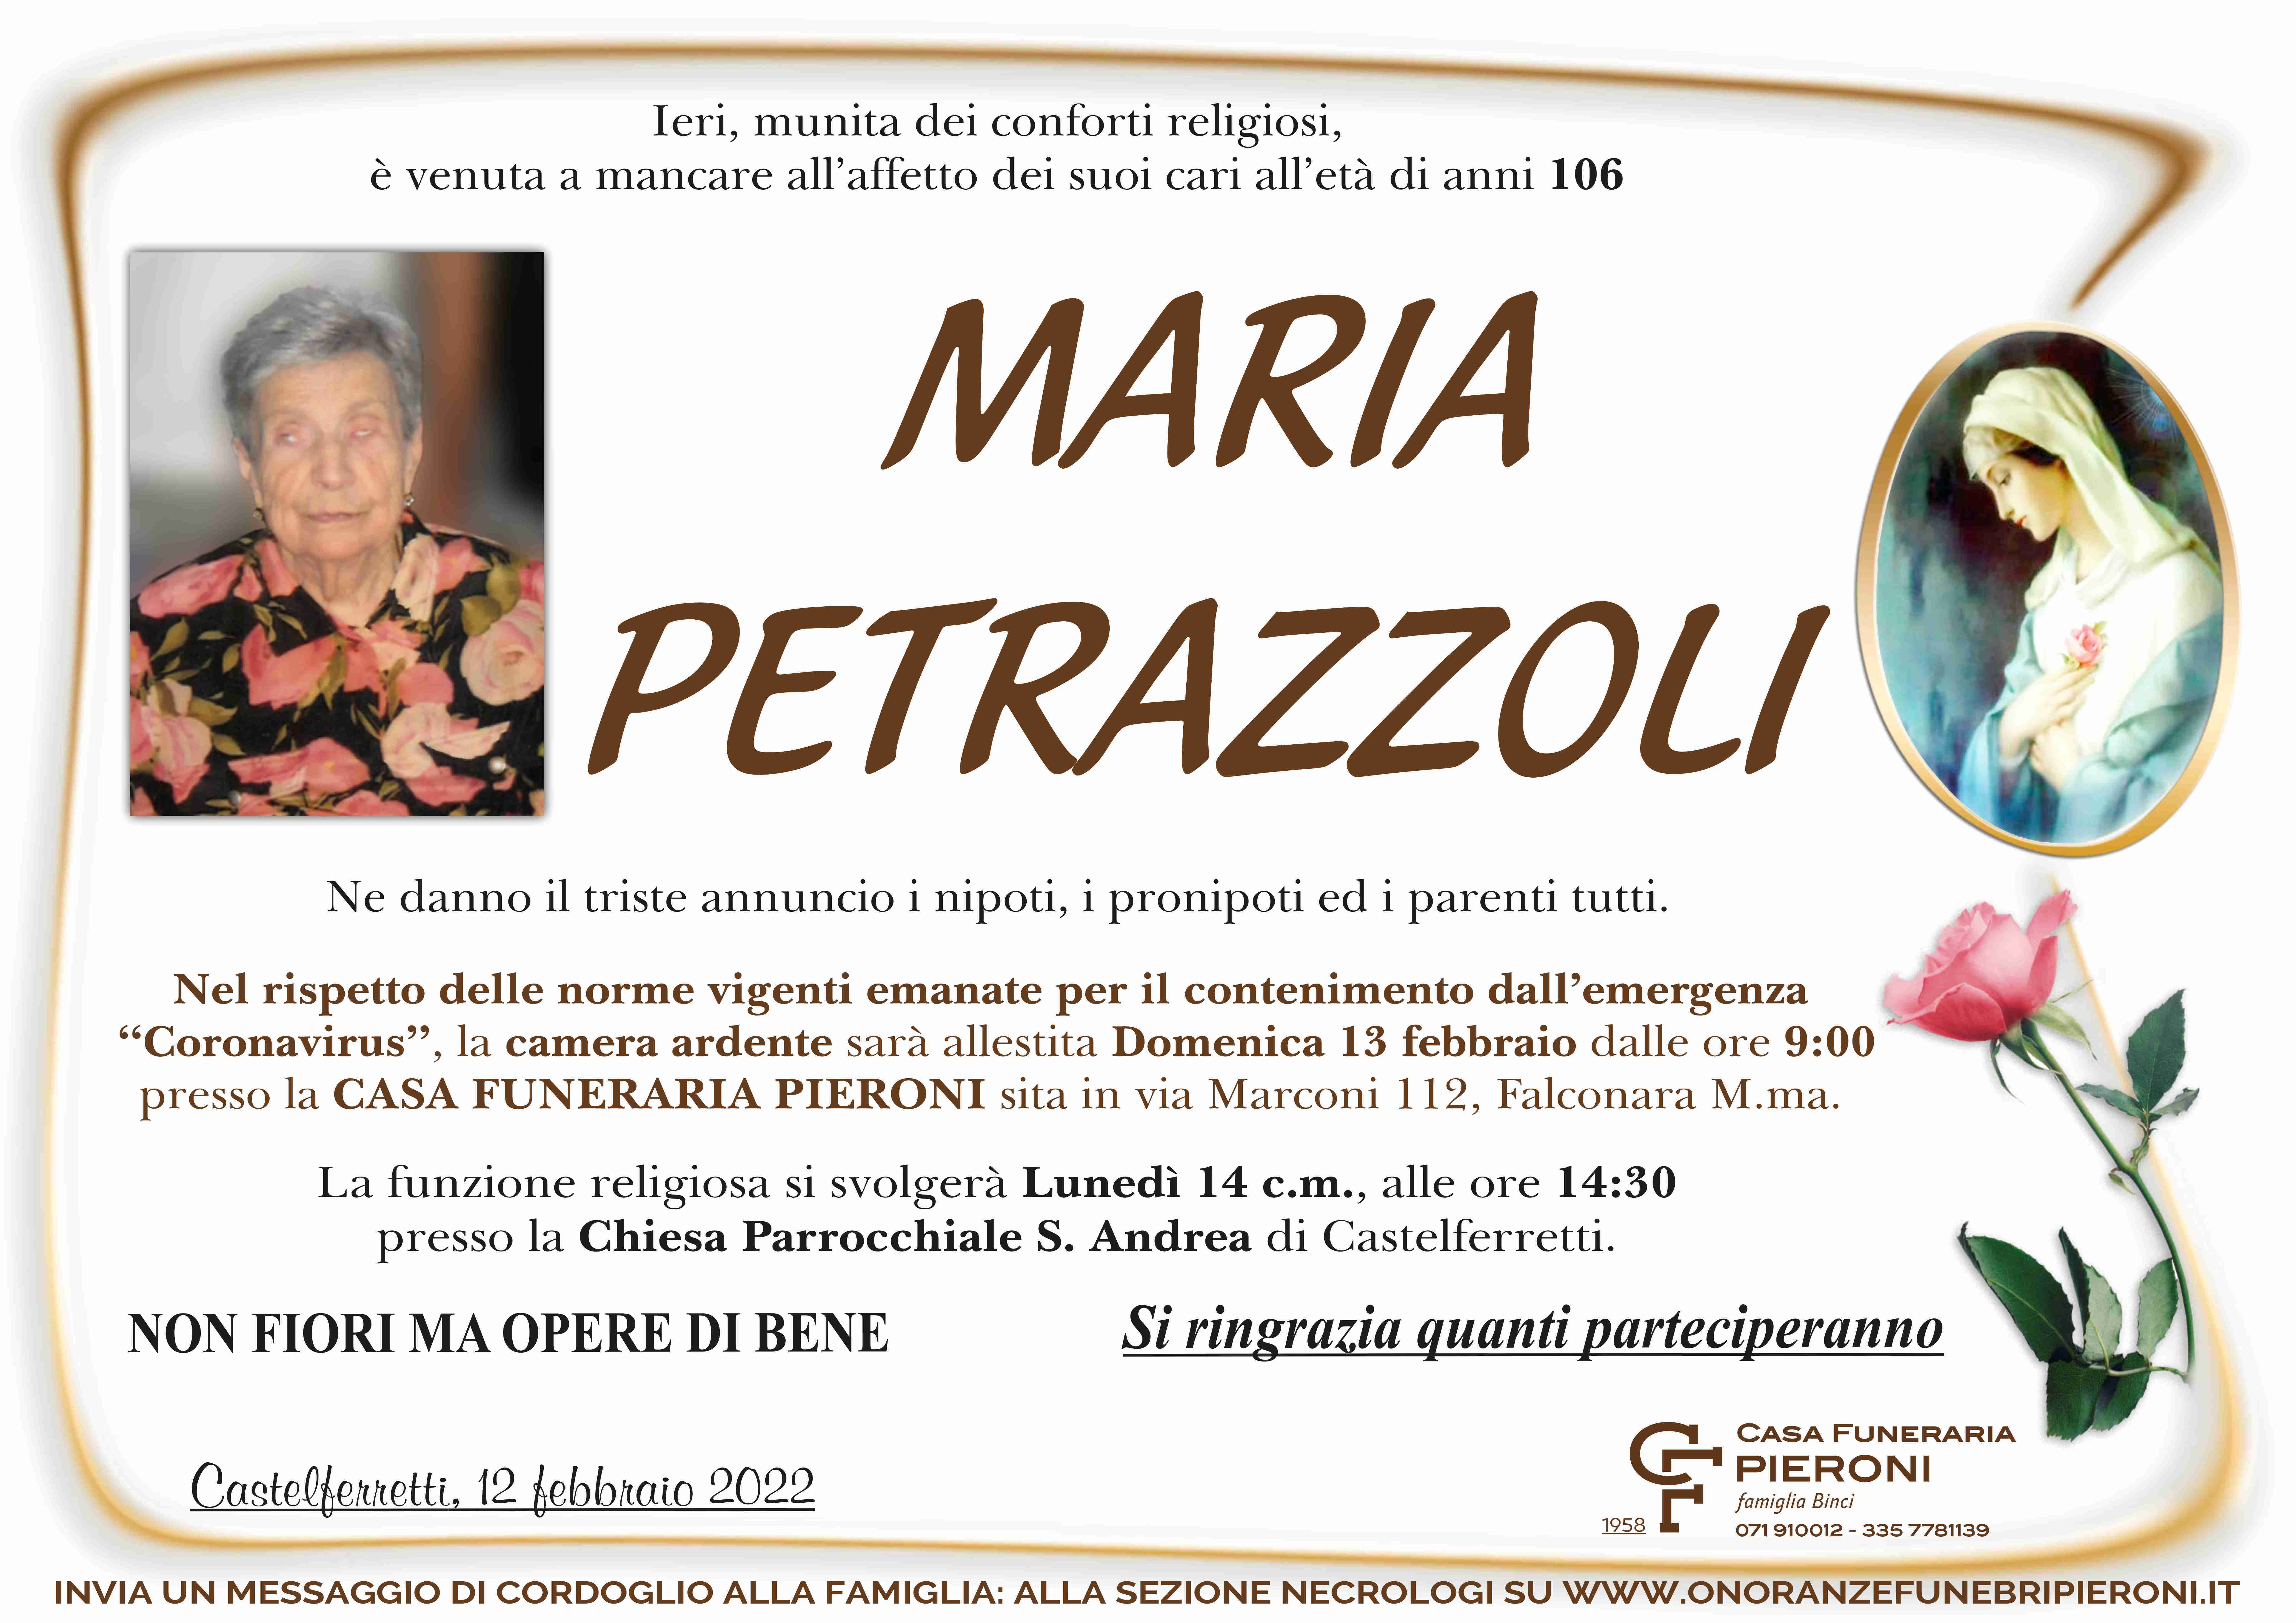 Maria Petrazzoli